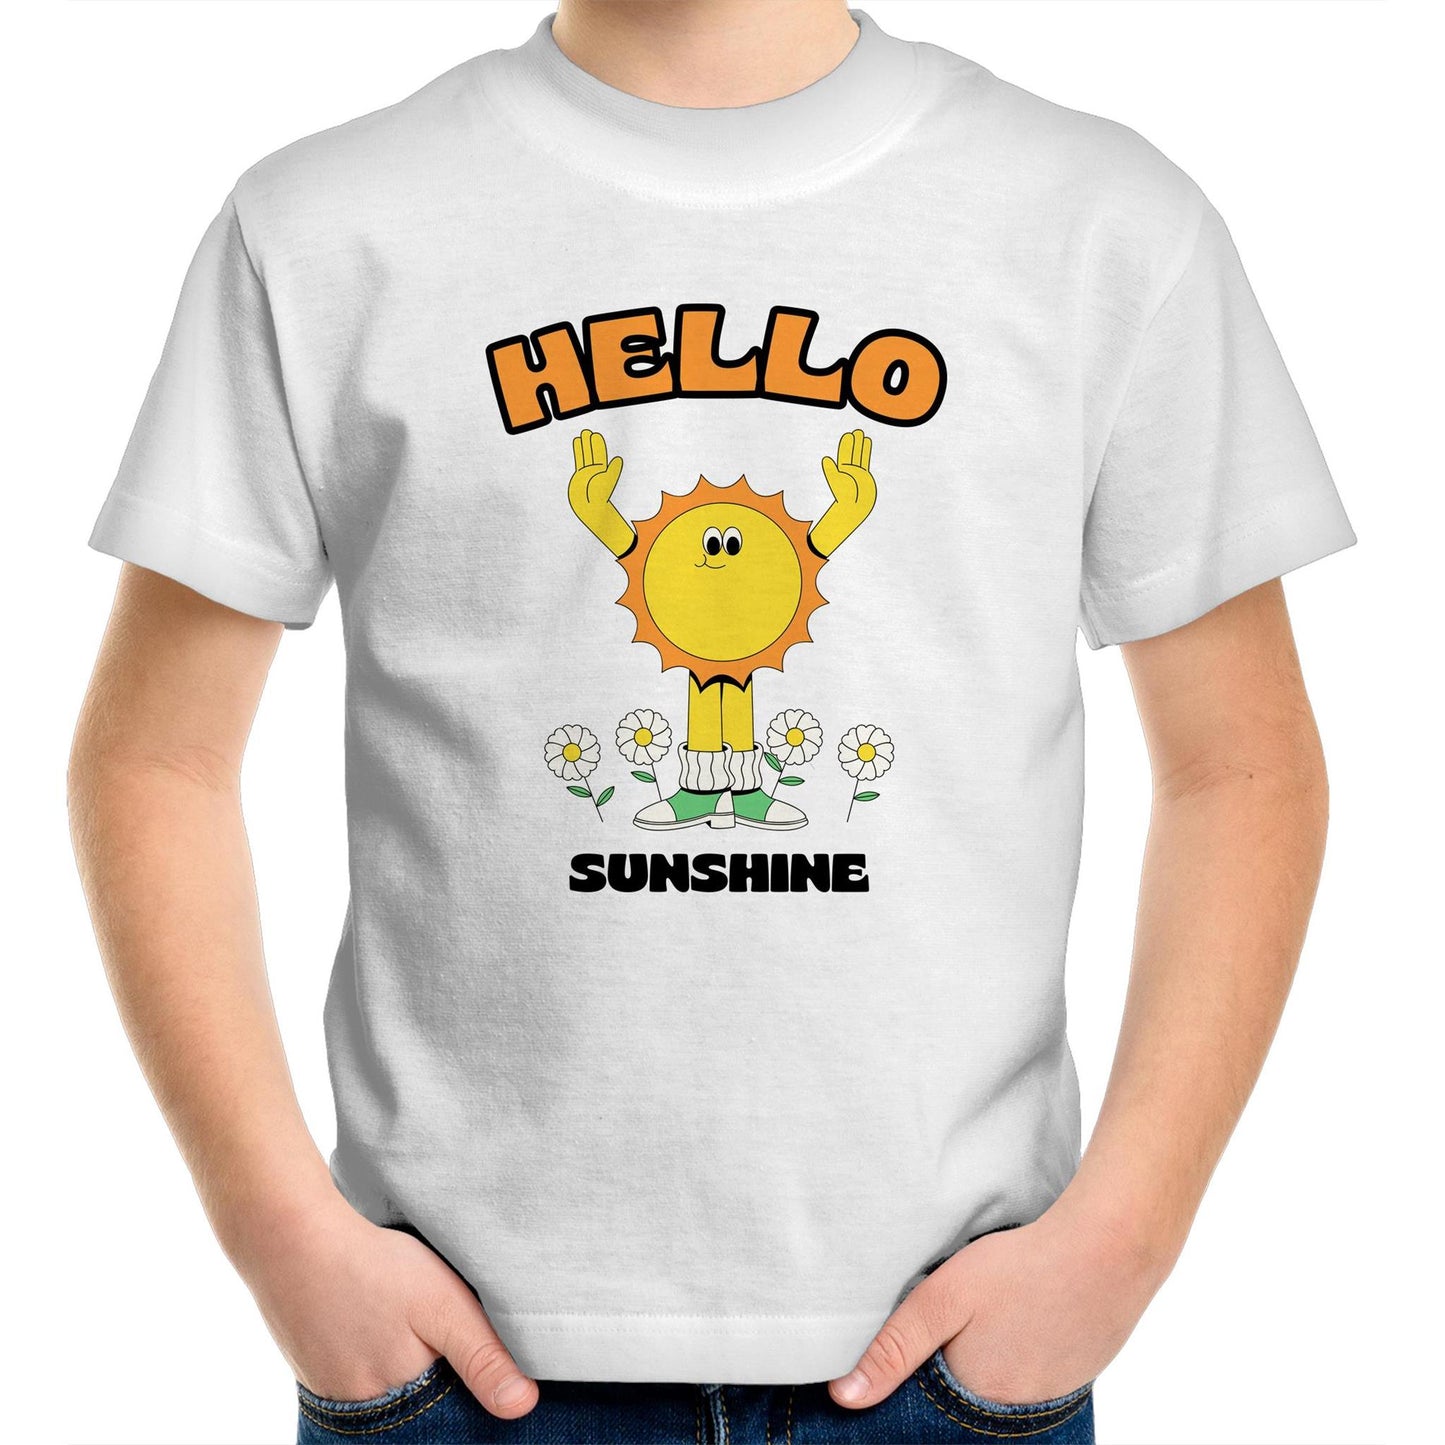 Hello Sunshine - Kids Youth Crew T-Shirt White Kids Youth T-shirt Retro Summer